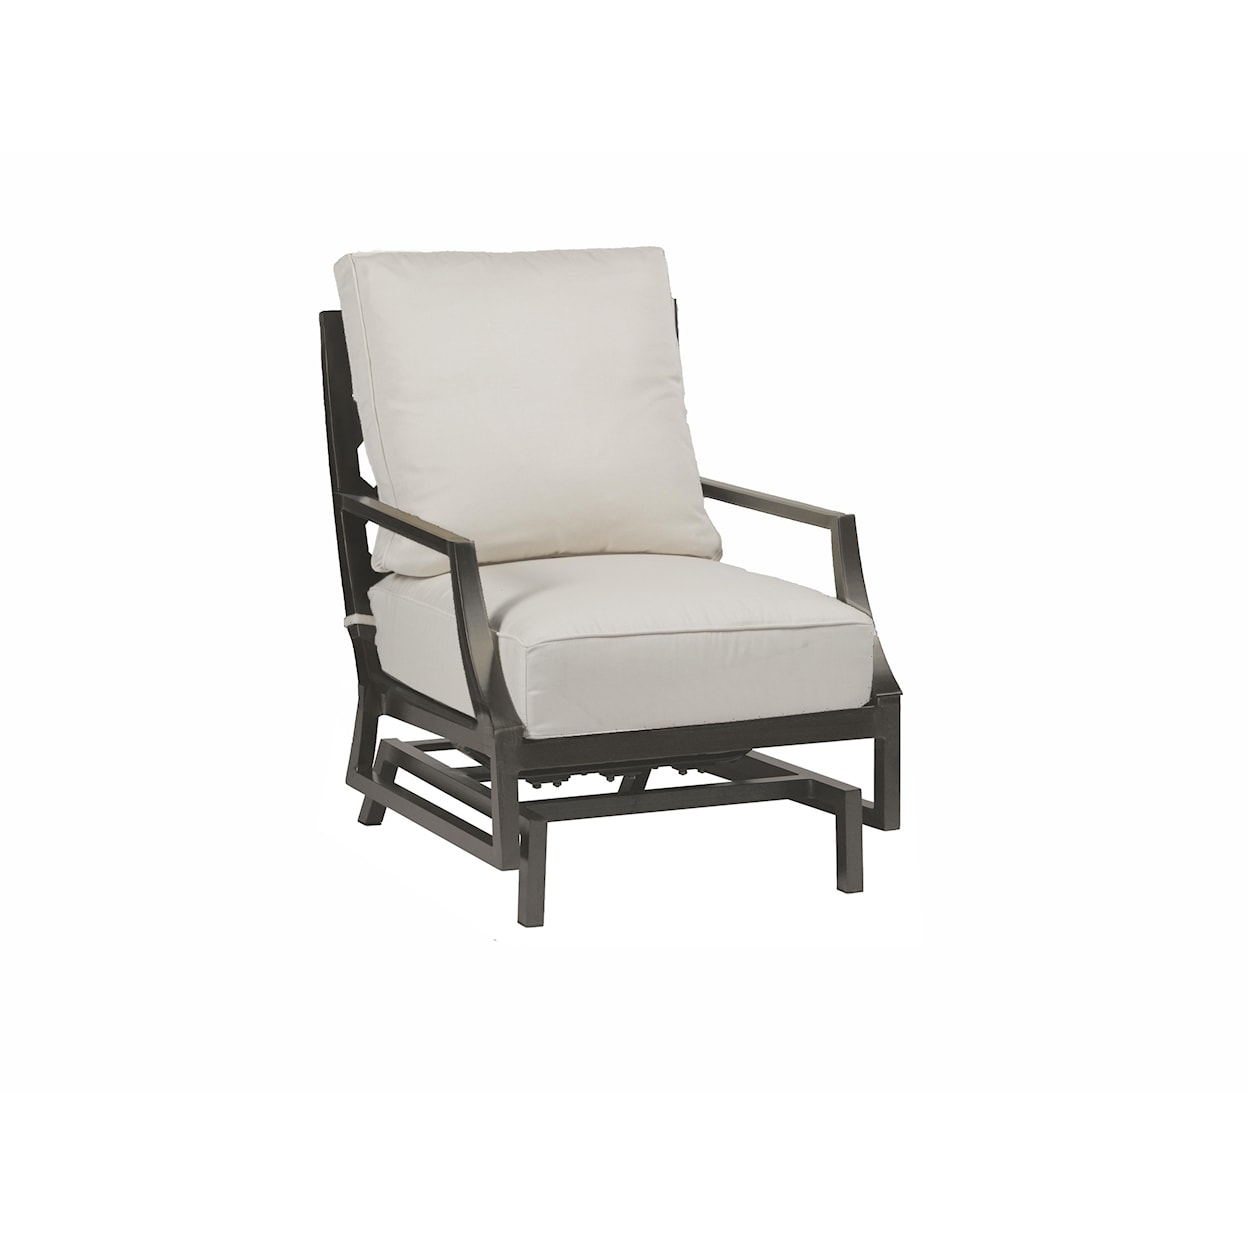 Summer Classics Lattice Lattice Outdoor Spring Lounge Chair